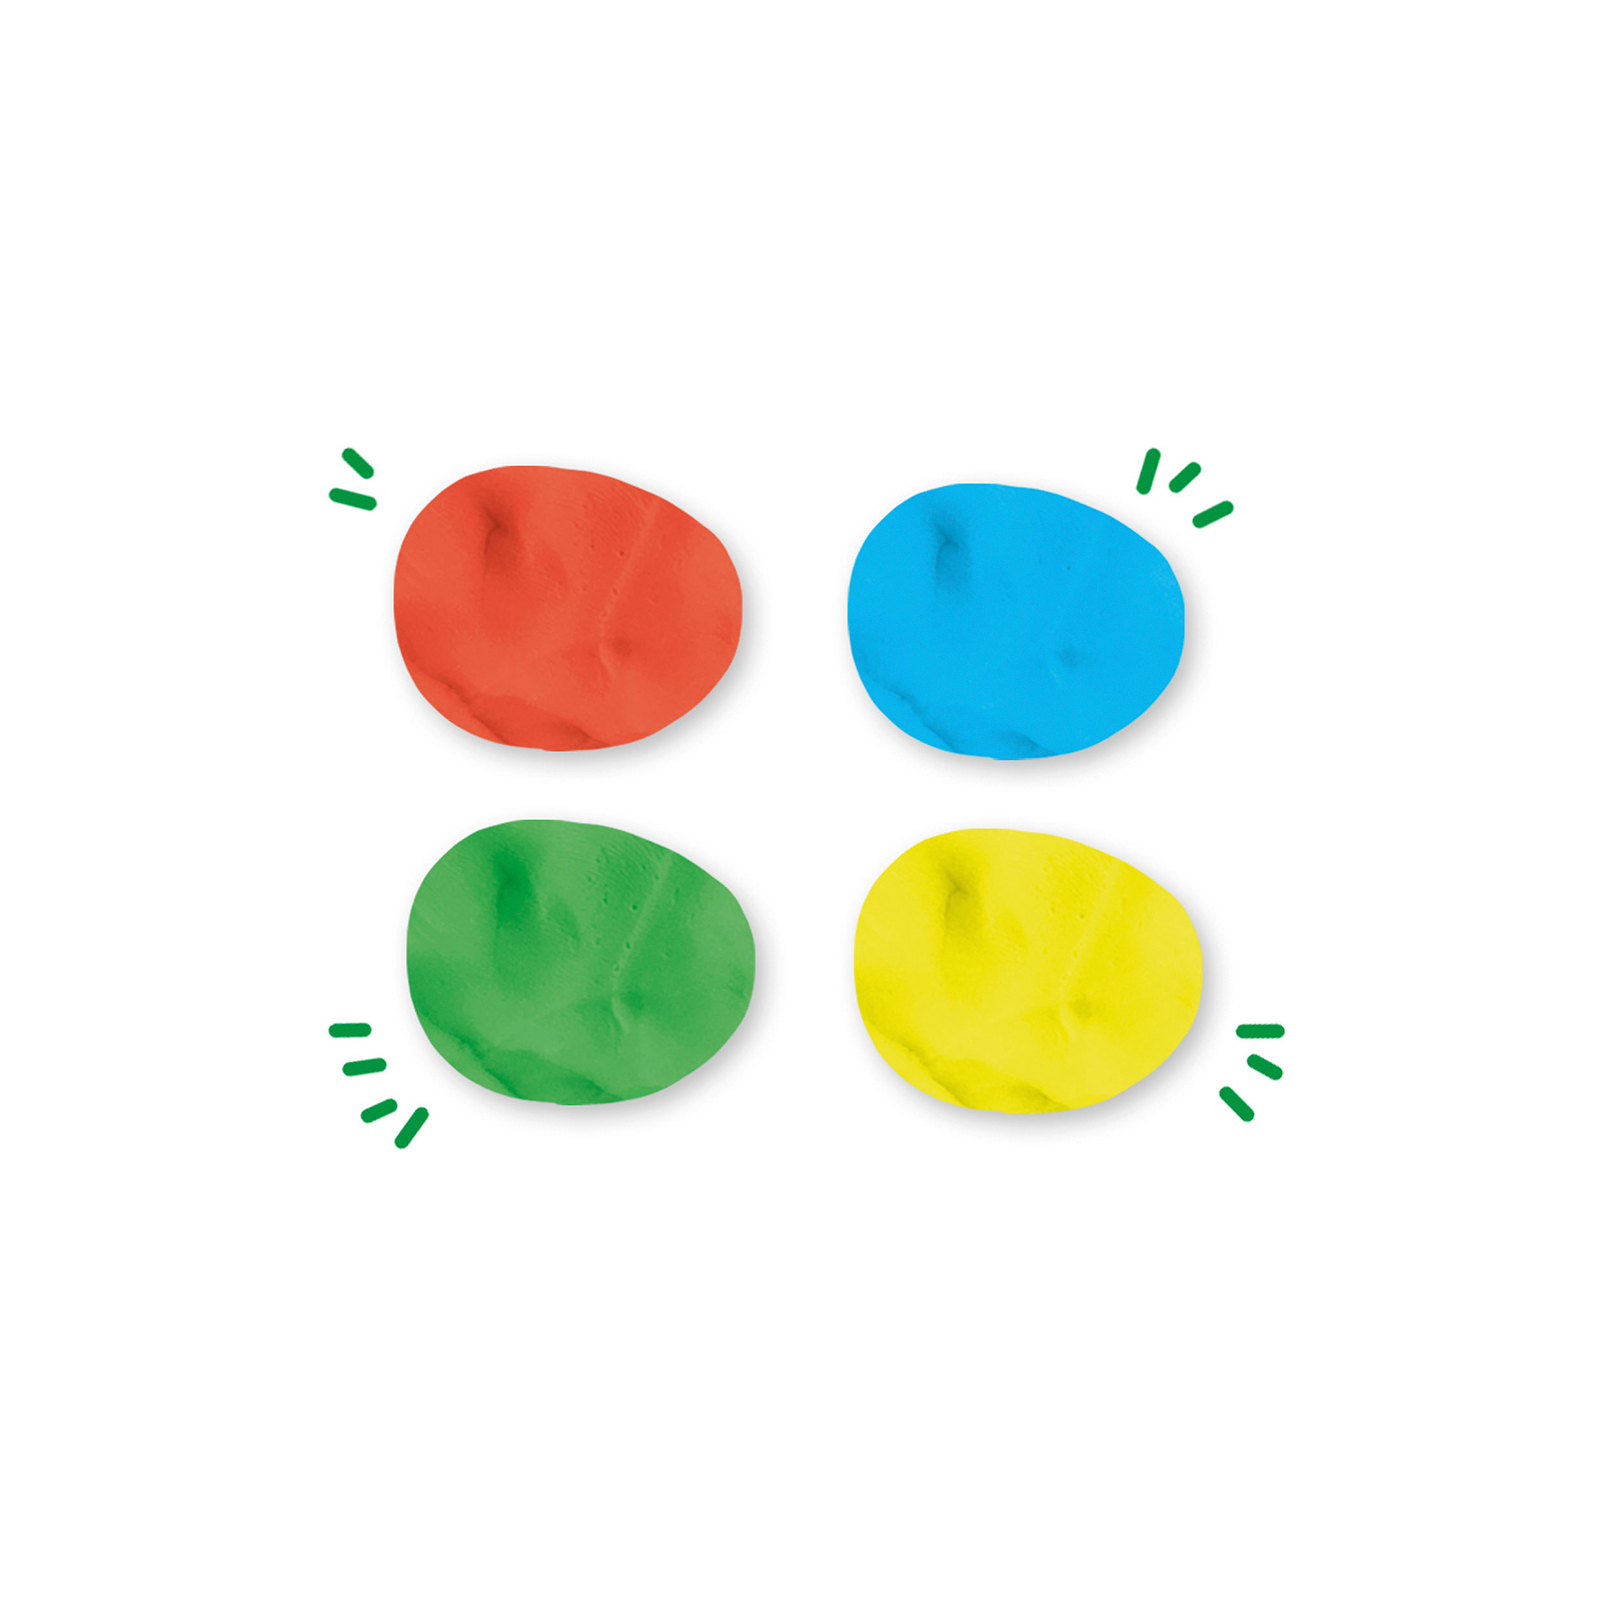 Набор для творчества Ses Feel good dough - Цвета (4 баночки Незасыхающая масса для лепки) (00511S) изображение 3